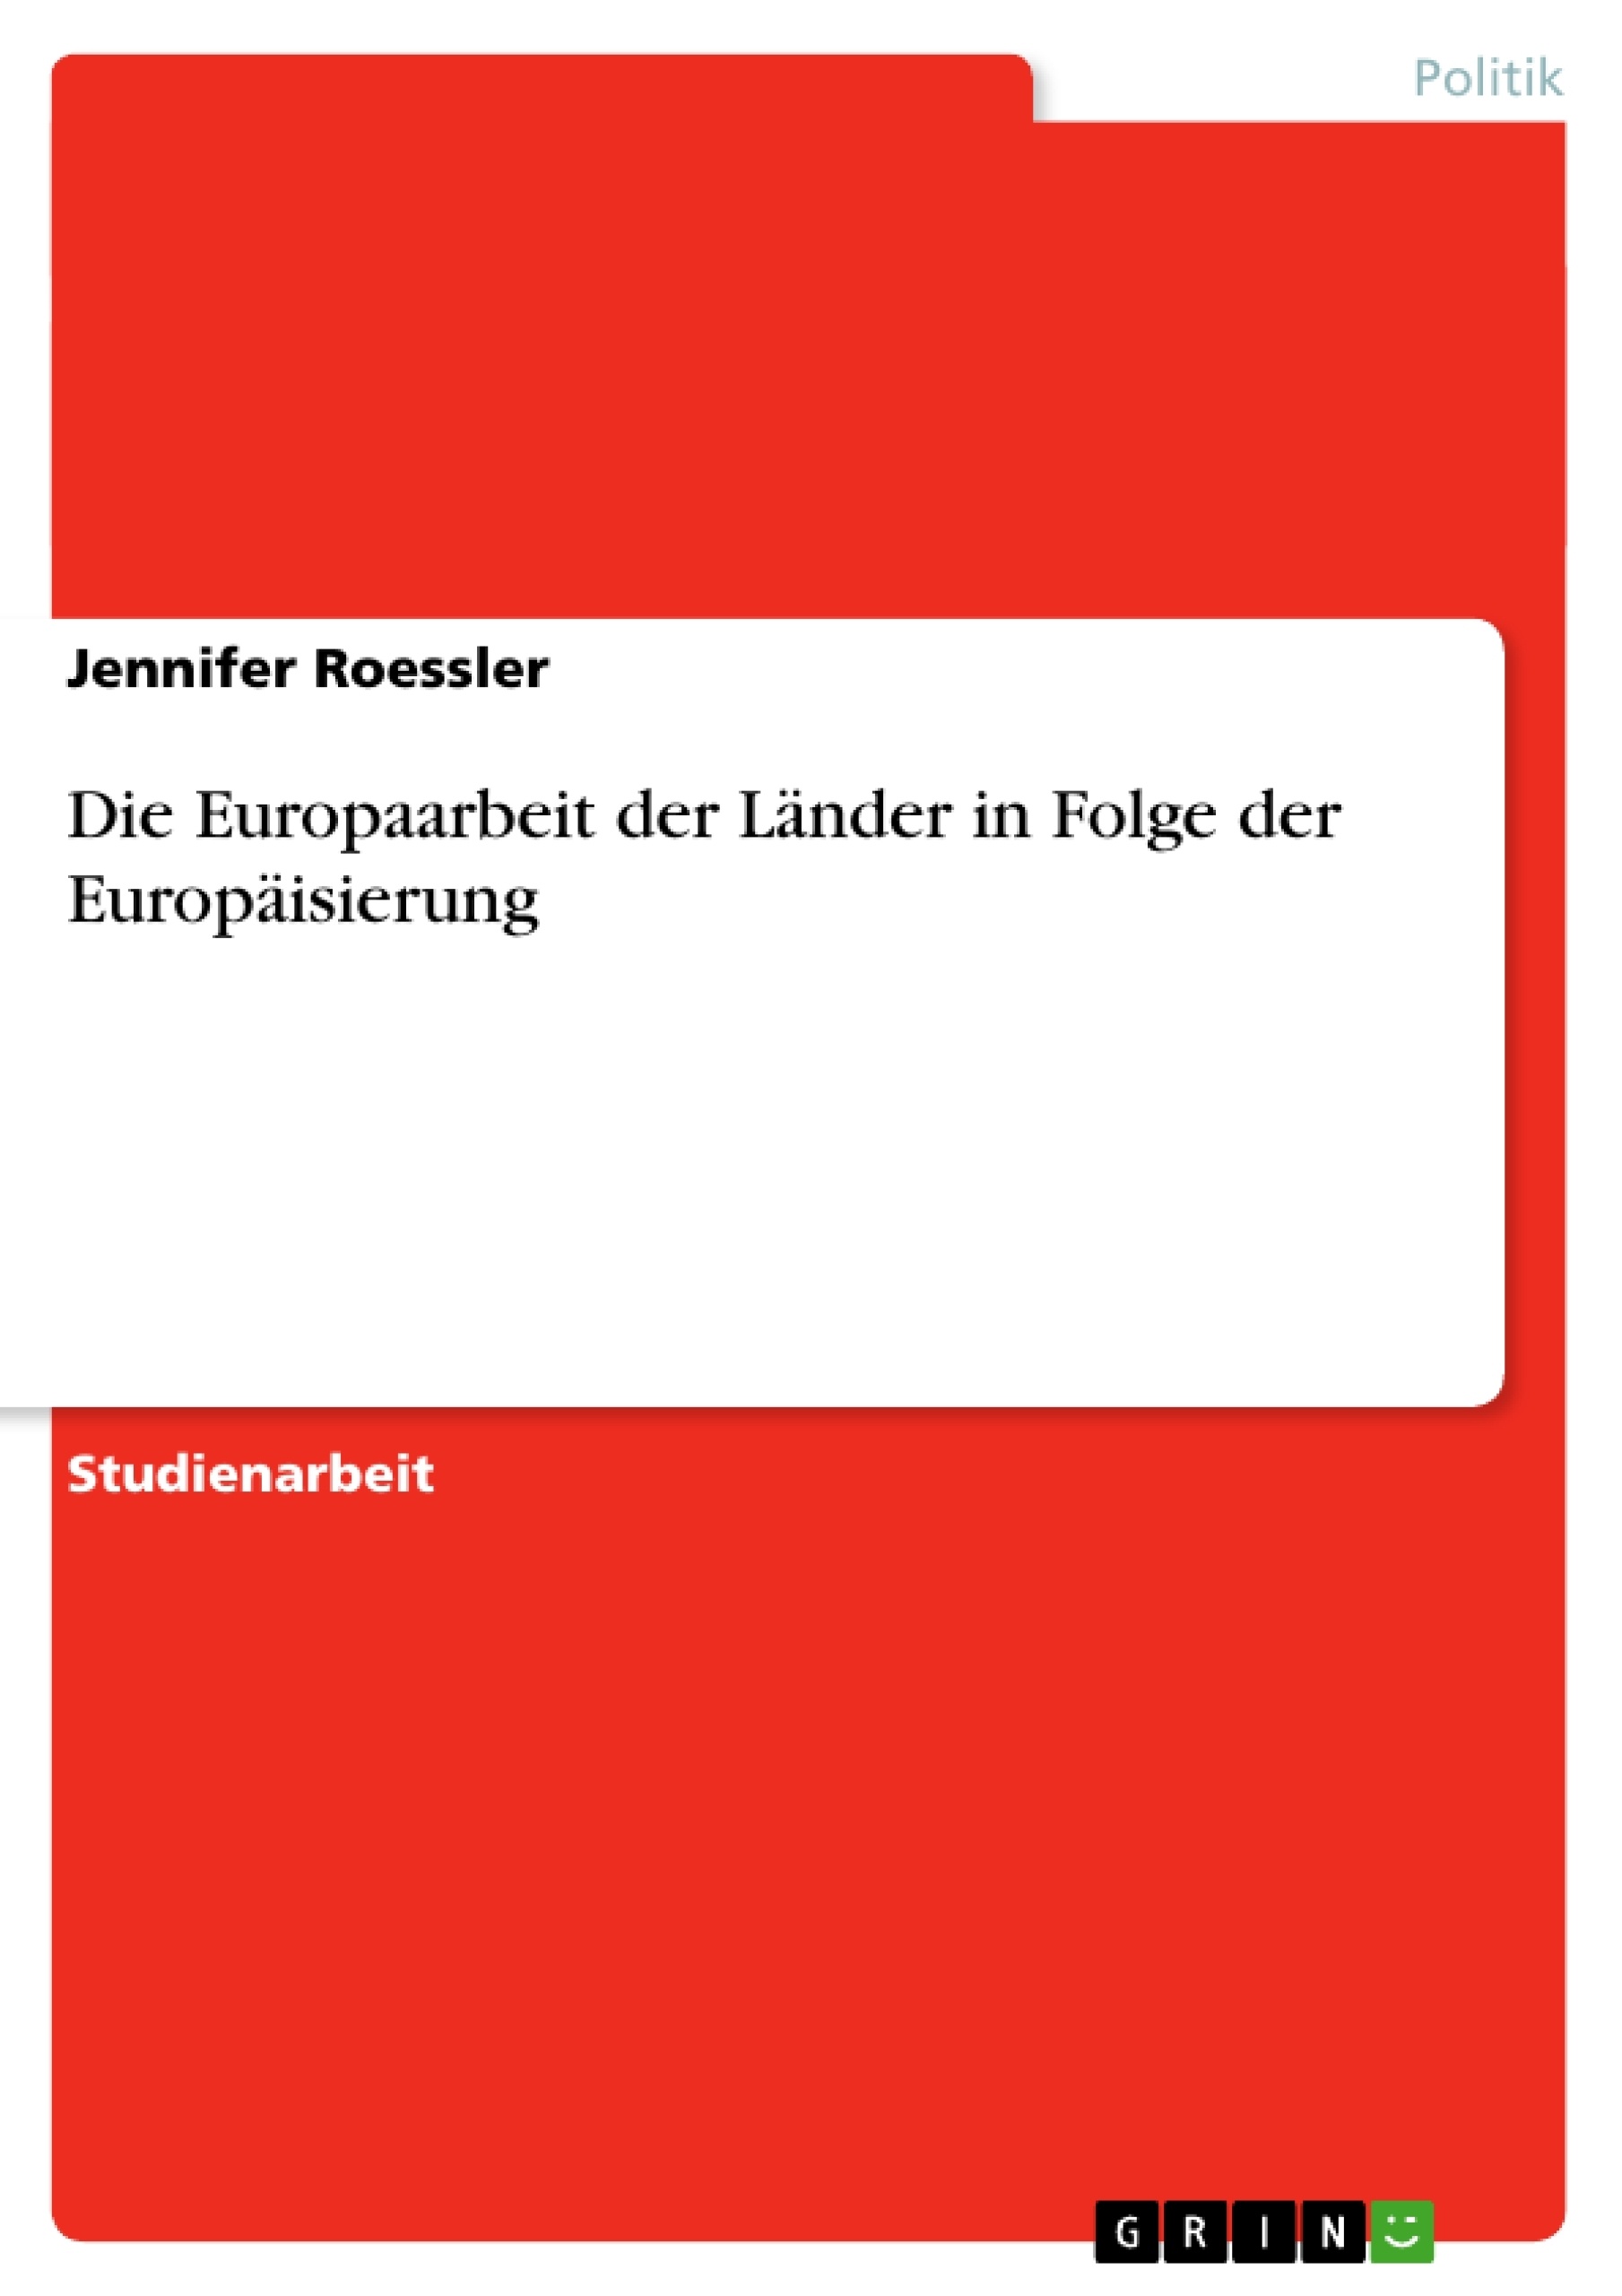 Title: Die Europaarbeit der Länder in Folge der Europäisierung